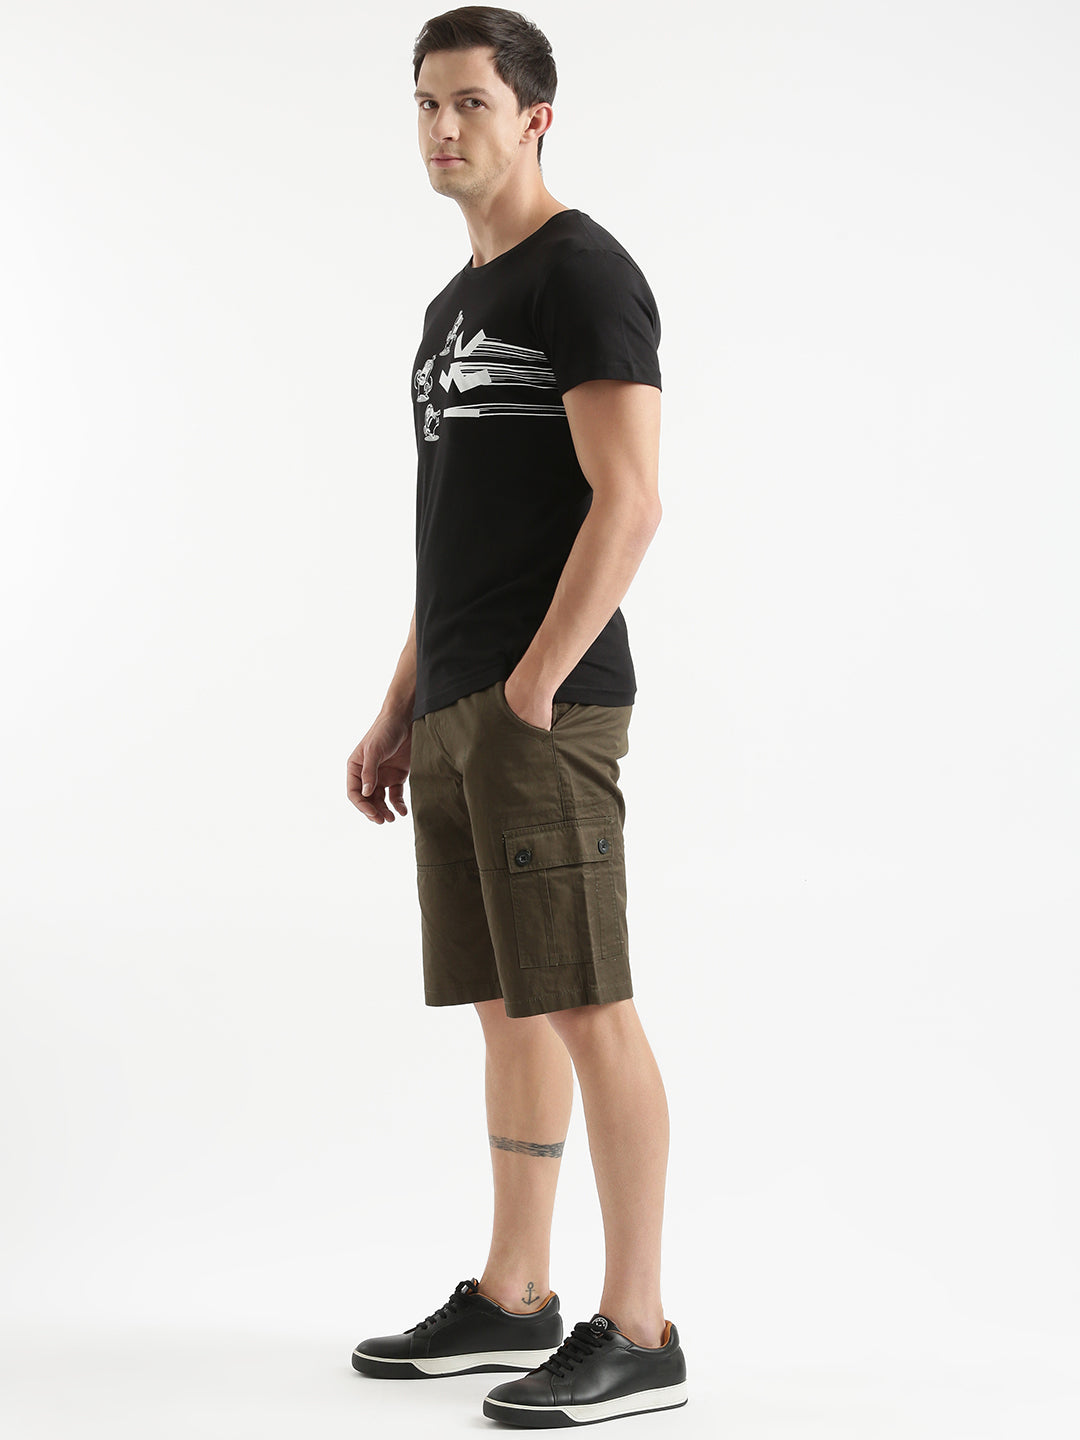 Printed Minion Black Slim Fit T-Shirt